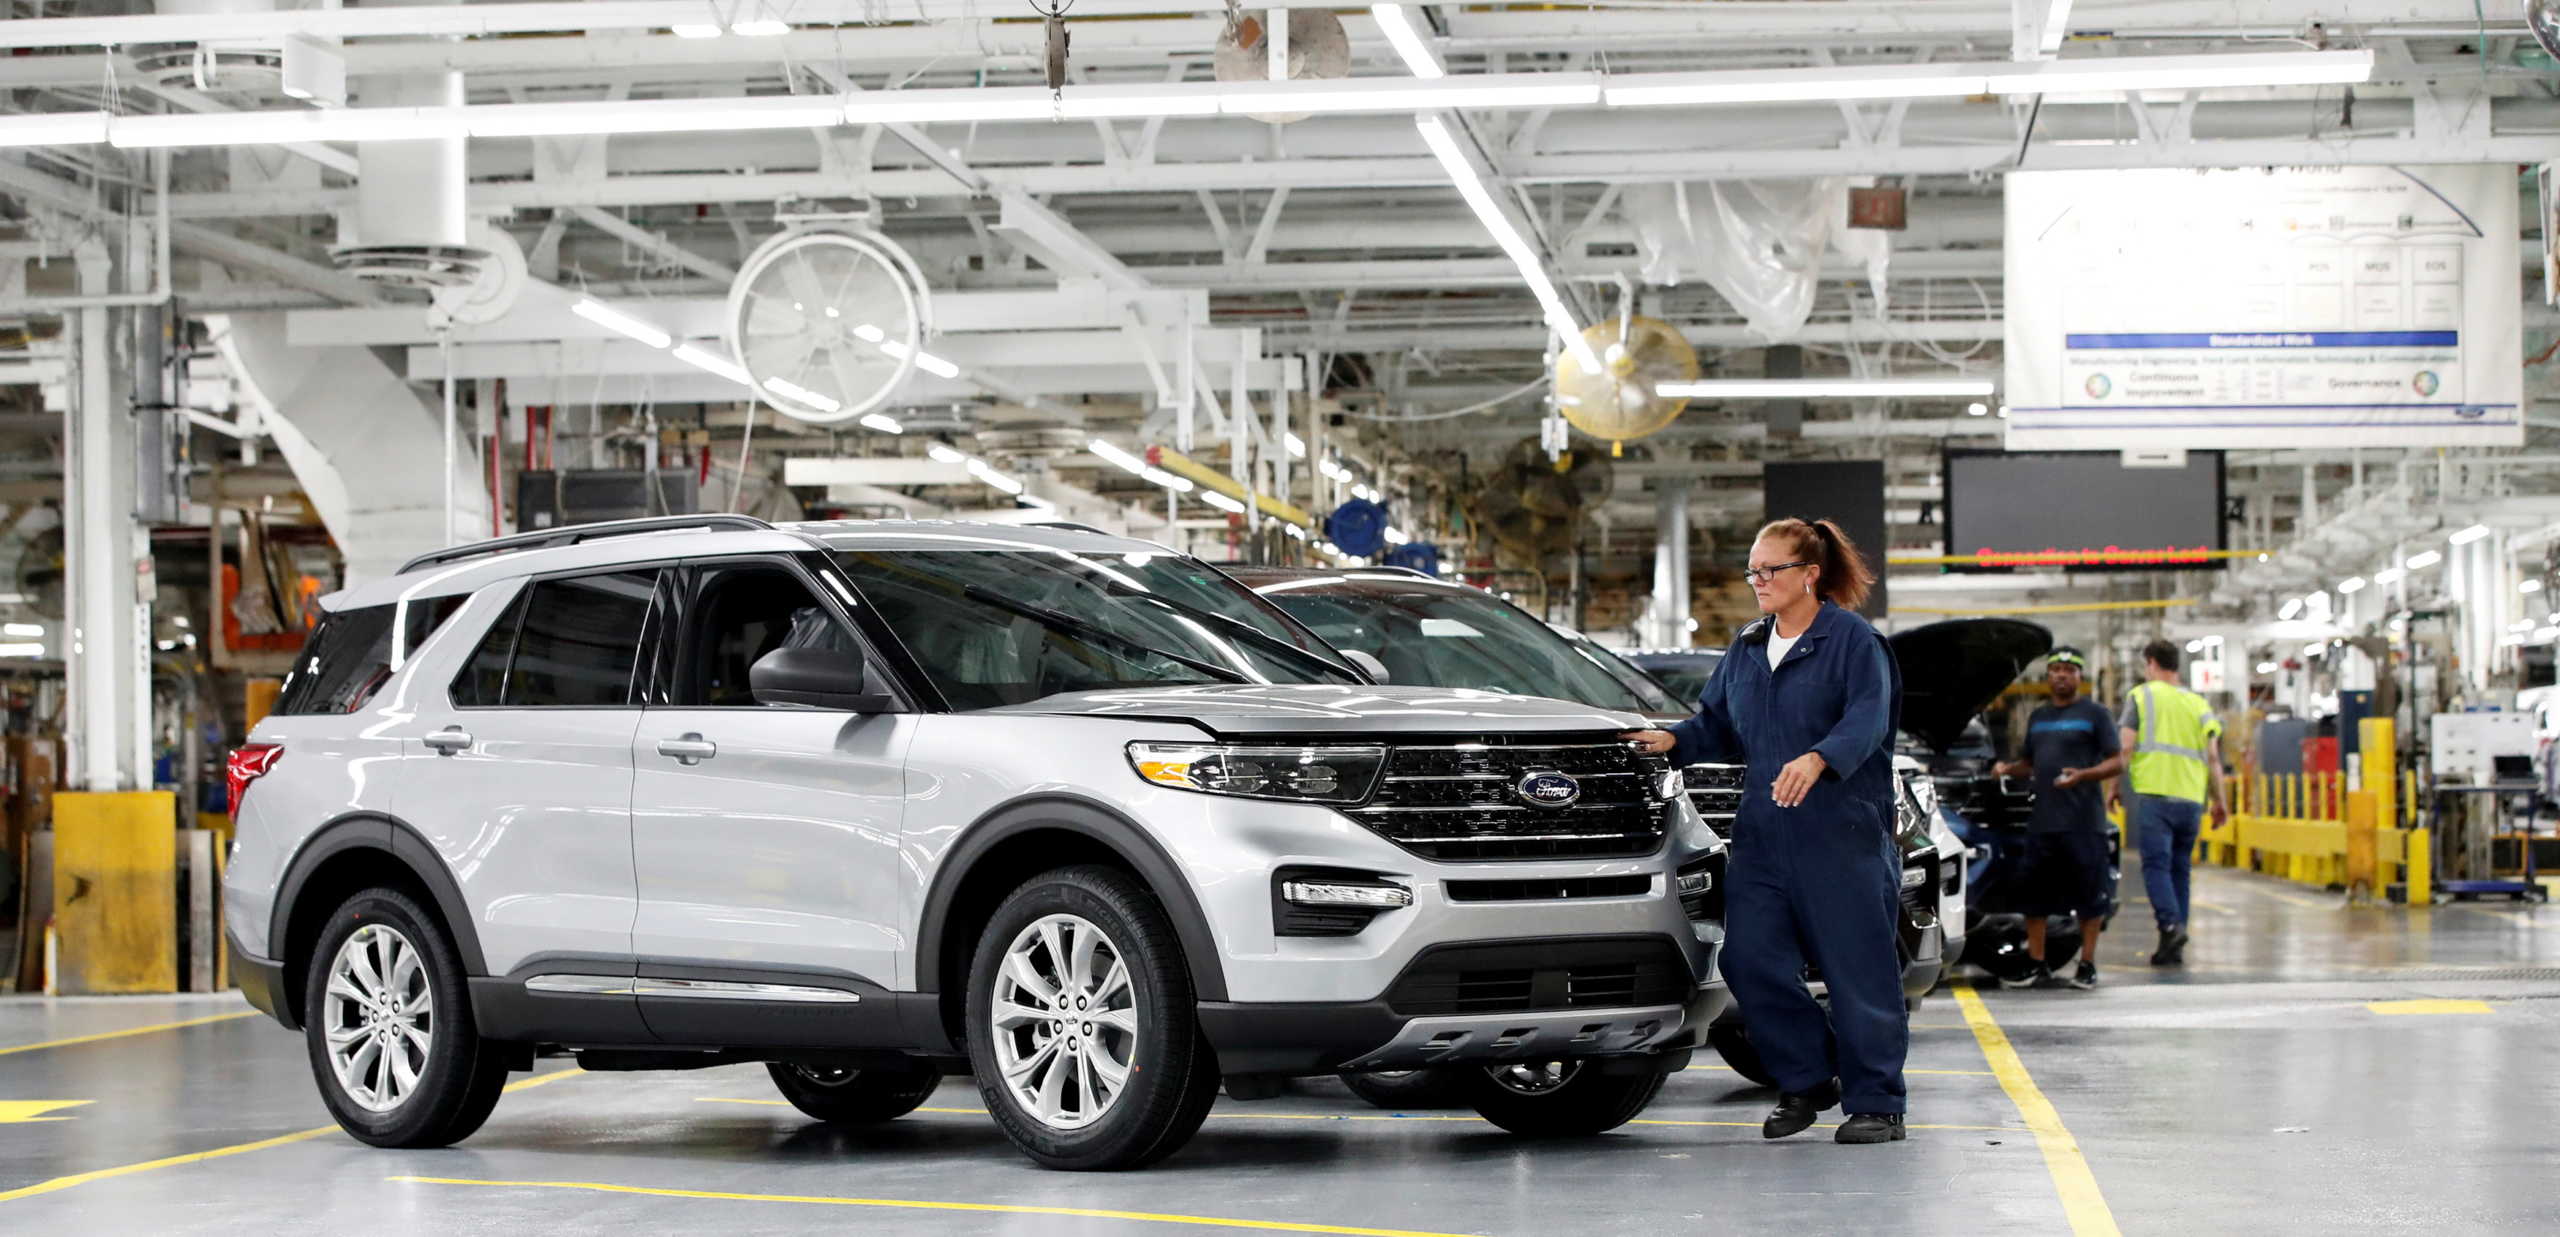 Ford: Σταματά την παραγωγή αυτοκινήτων στη Βόρεια Αμερική λόγω κορονοϊού